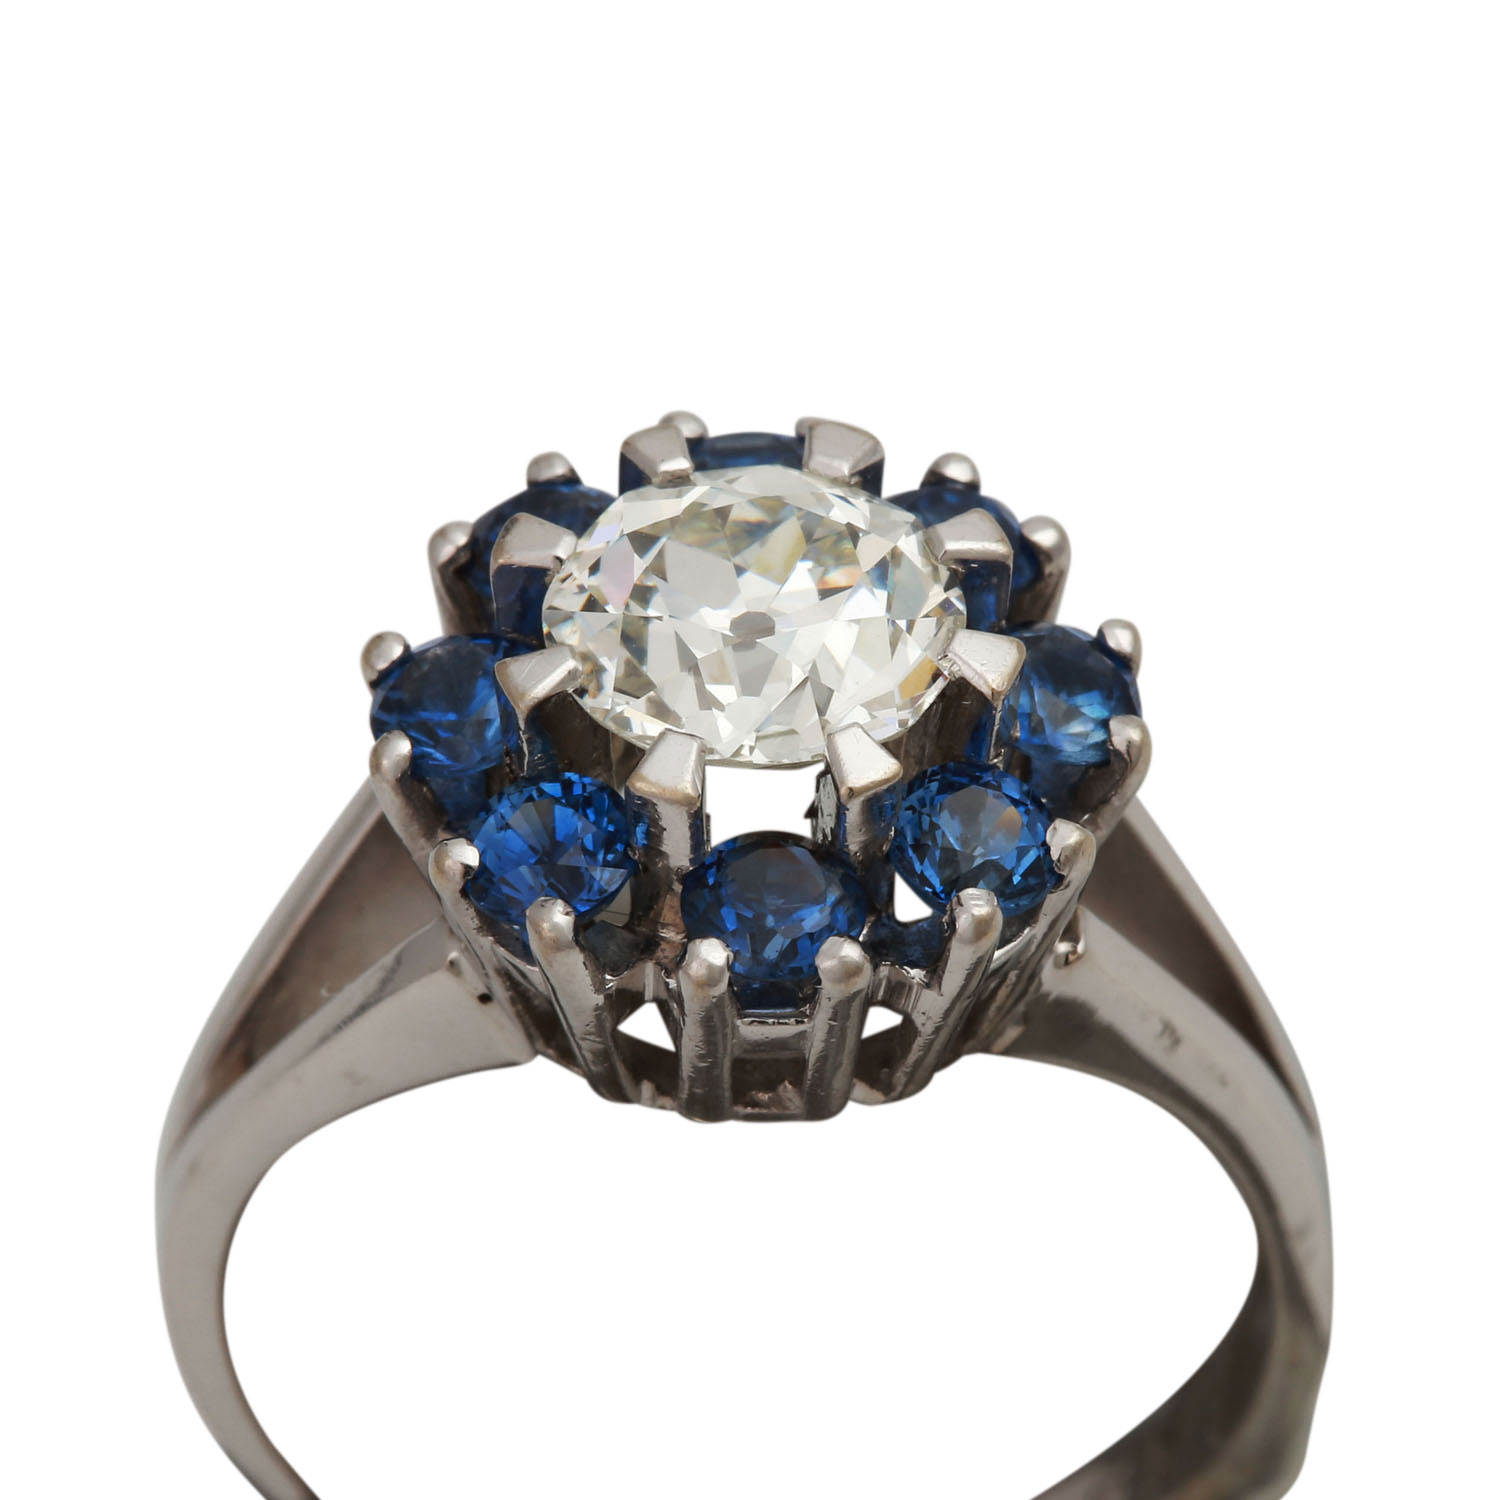 Ring mit Altschliffdiamant ca. 1,4 ct,GW (K)/VS2, Fluoreszenz: keine, Saphire von zus. ca. 0,8 ct, - Image 5 of 5